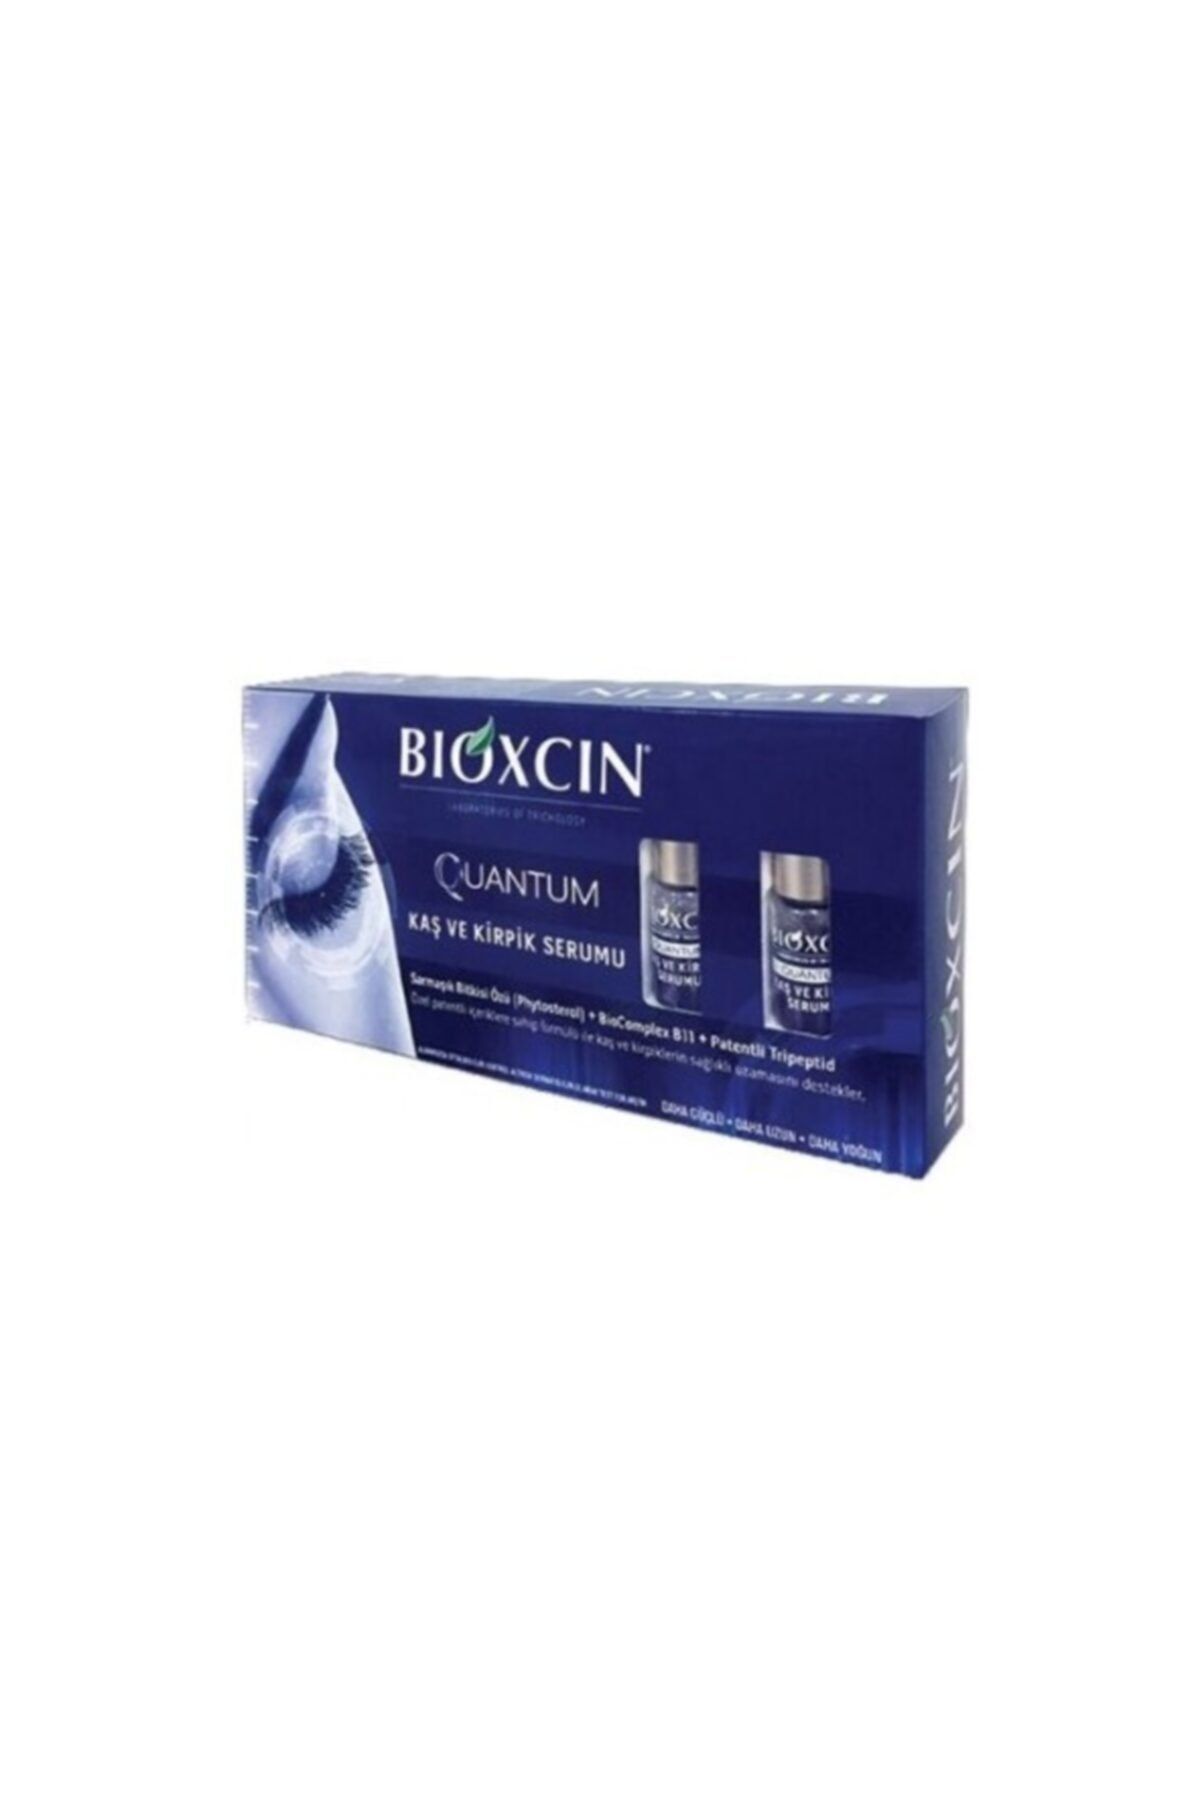 Bioxcin Quantum Kaş ve Kirpik Serumu 2 X 5 ml